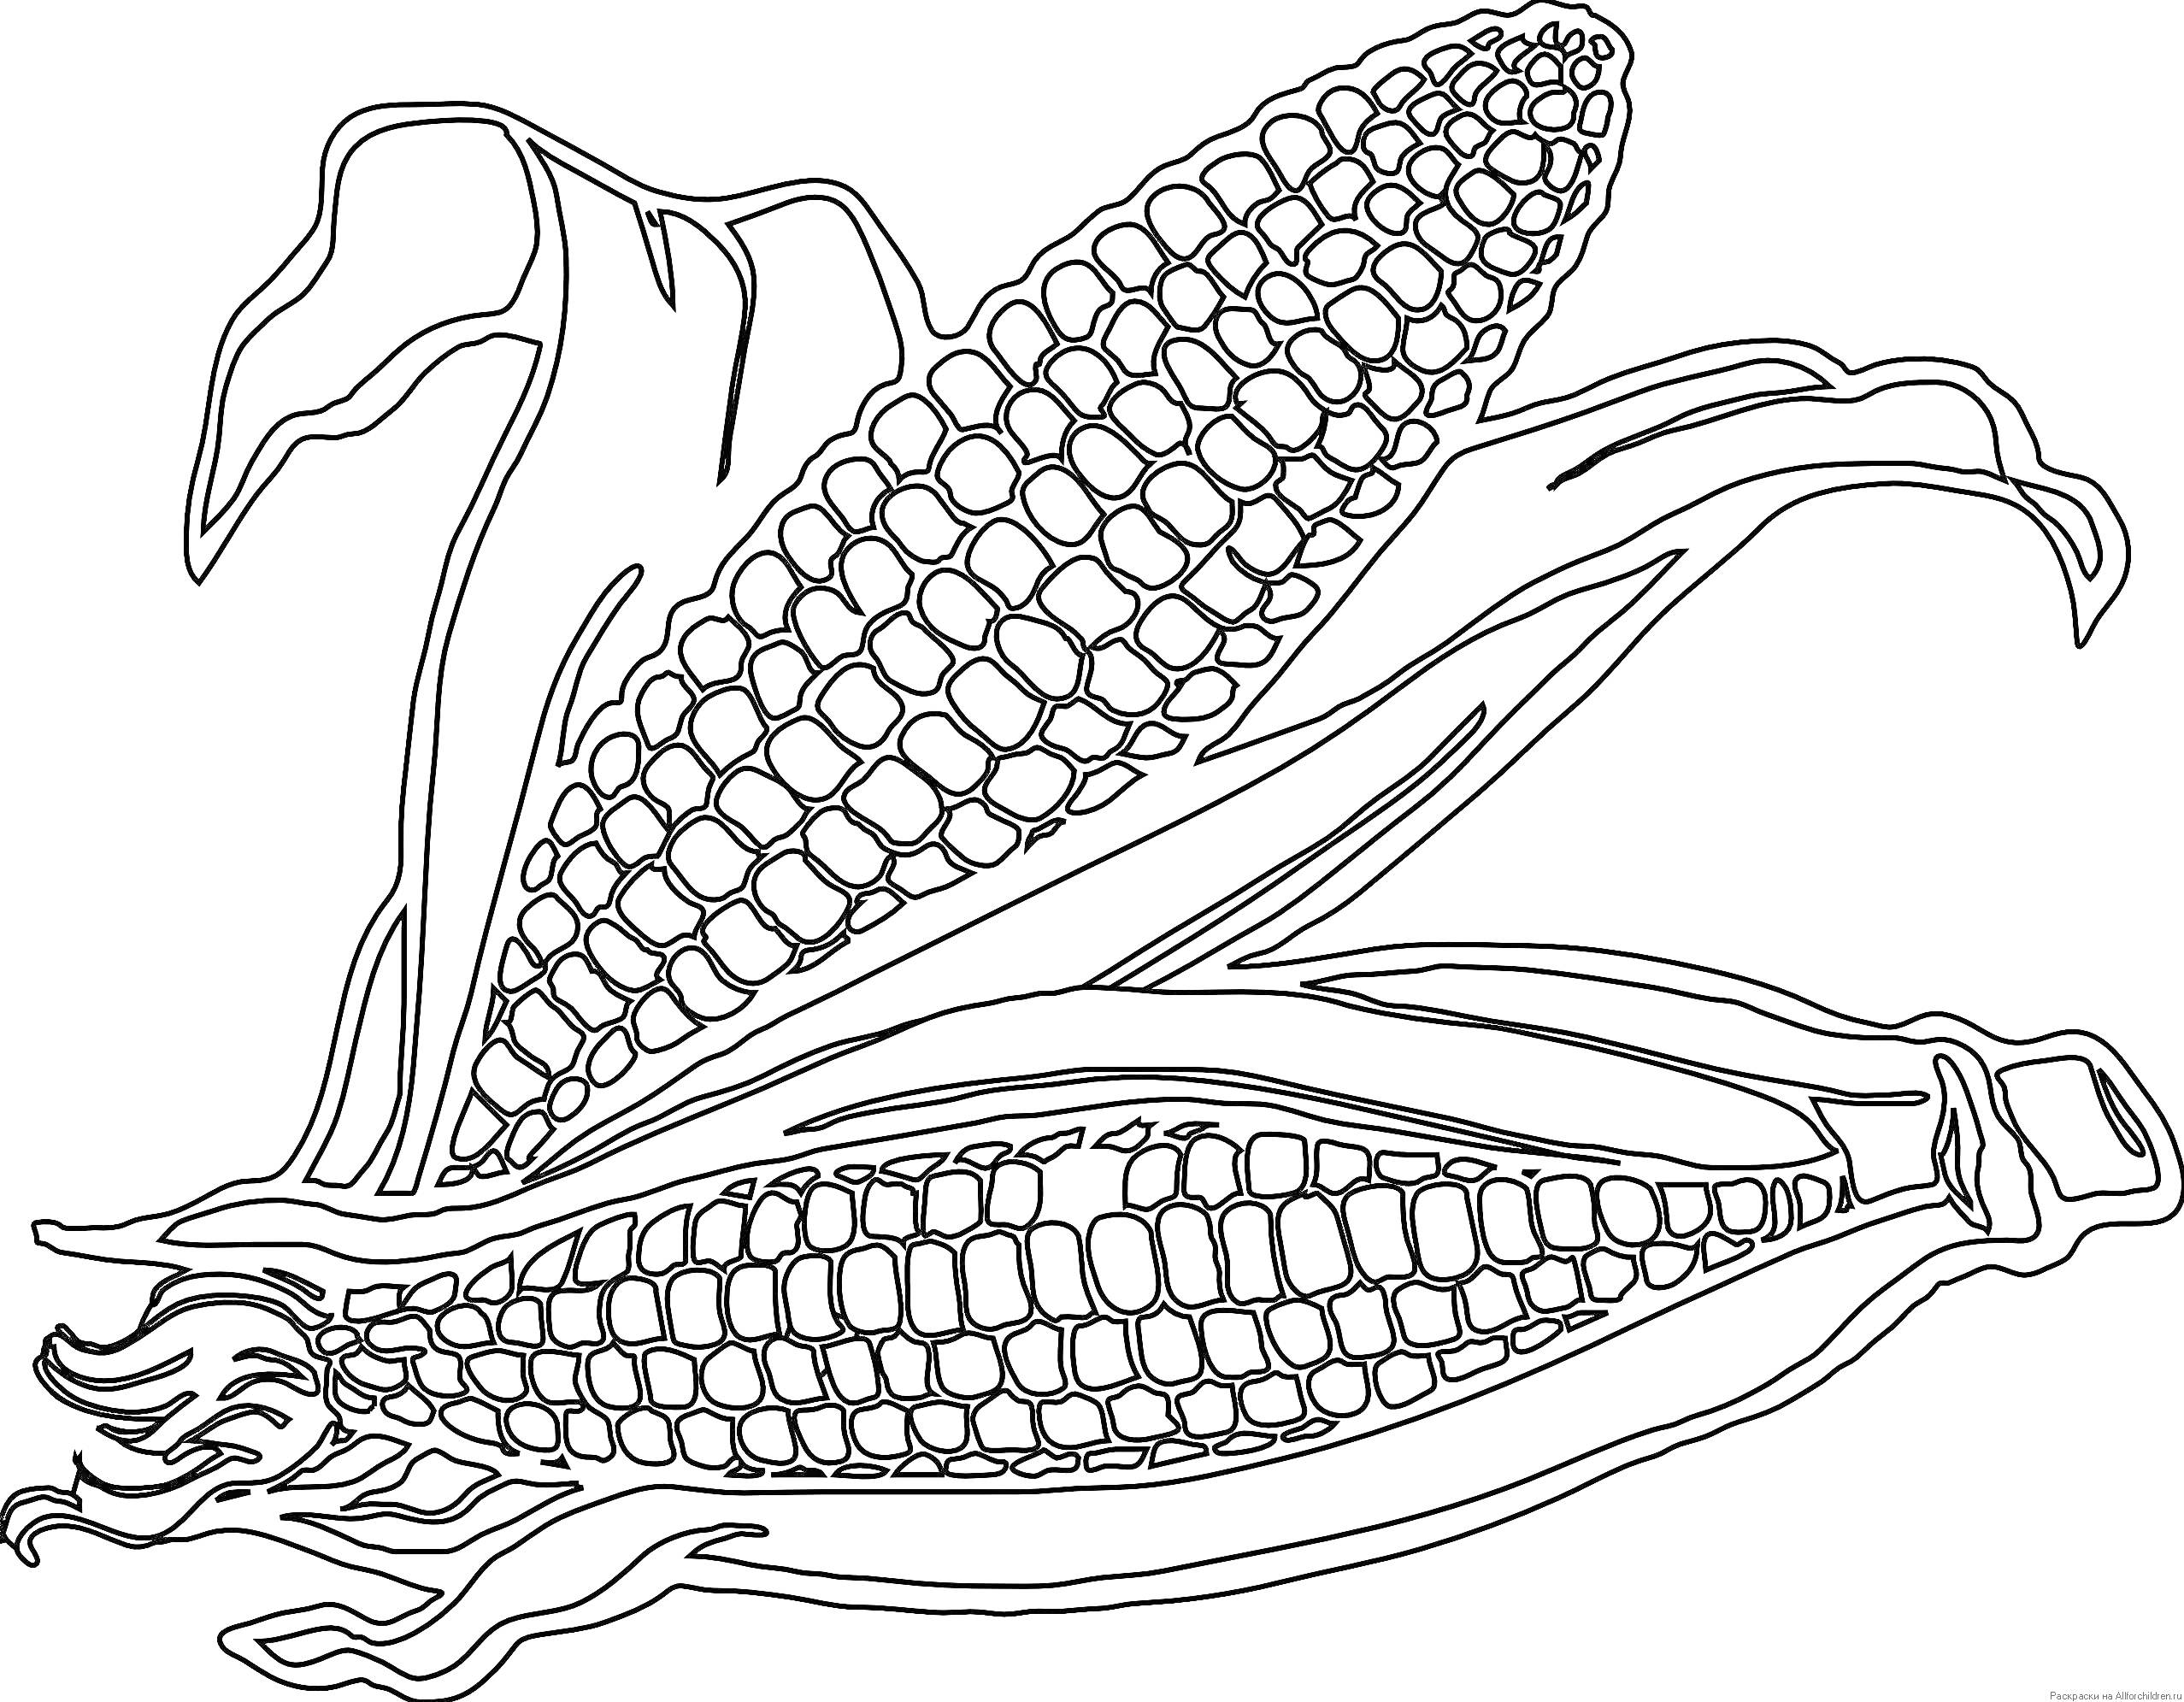 Раскраска Два початка кукурузы в оболочке